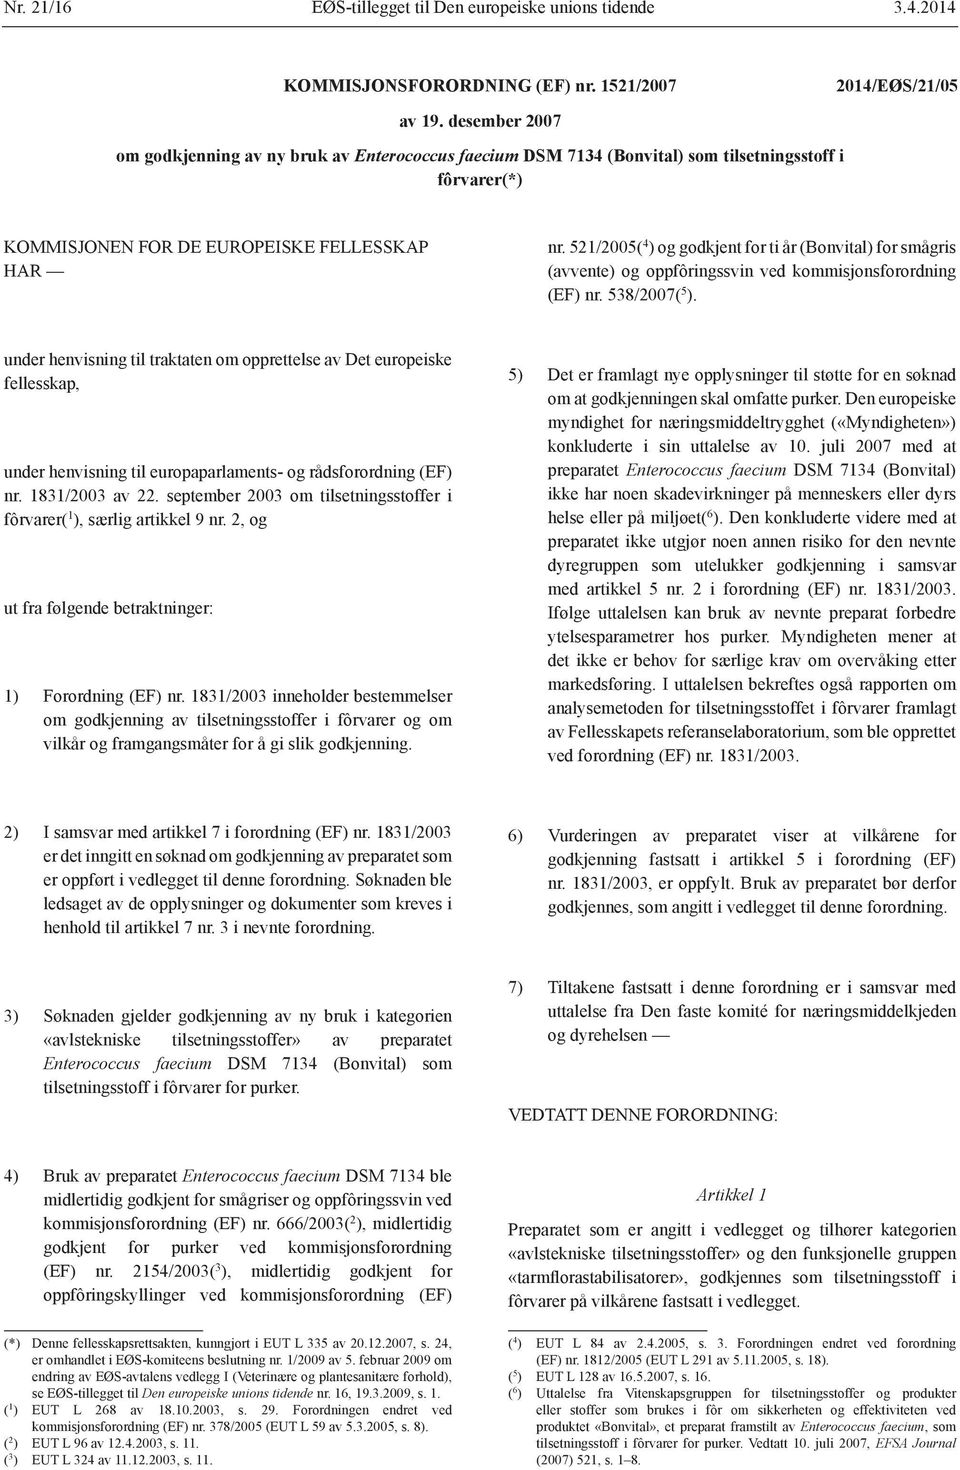 521/2005( 4 ) og godkjent for ti år (Bonvital) for smågris (avvente) og oppfôringssvin ved kommisjonsforordning (EF) nr. 538/2007( 5 ).